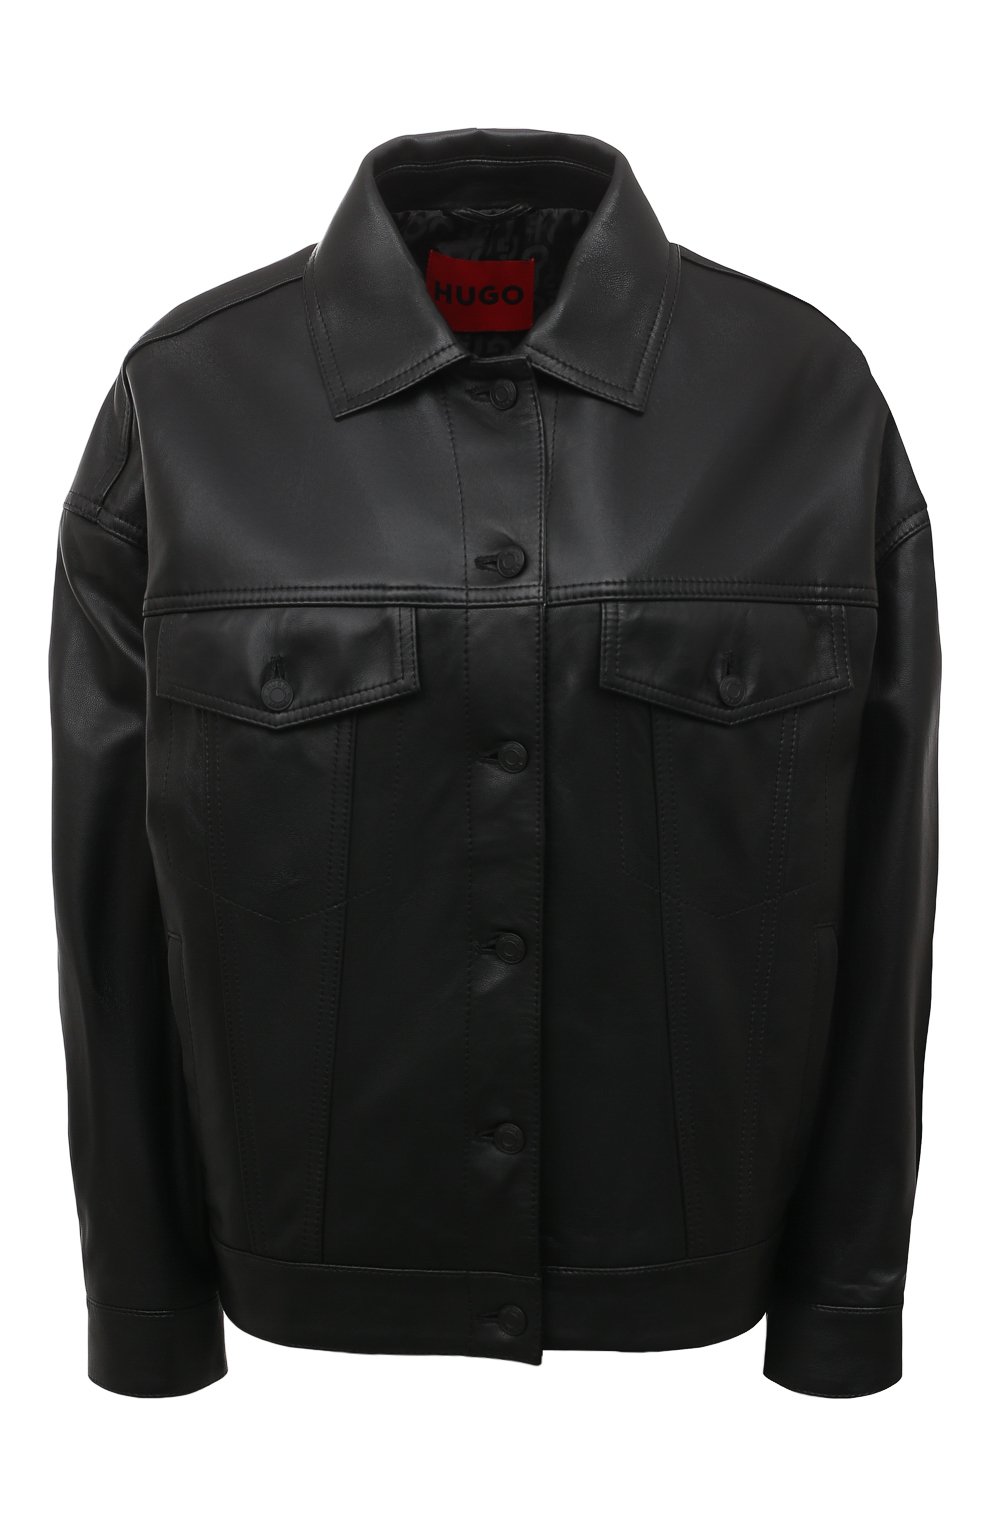 Куртки HUGO, Кожаная куртка HUGO, Шри-Ланка, Чёрный, Кожа натуральная: 100%;, 13380348  - купить